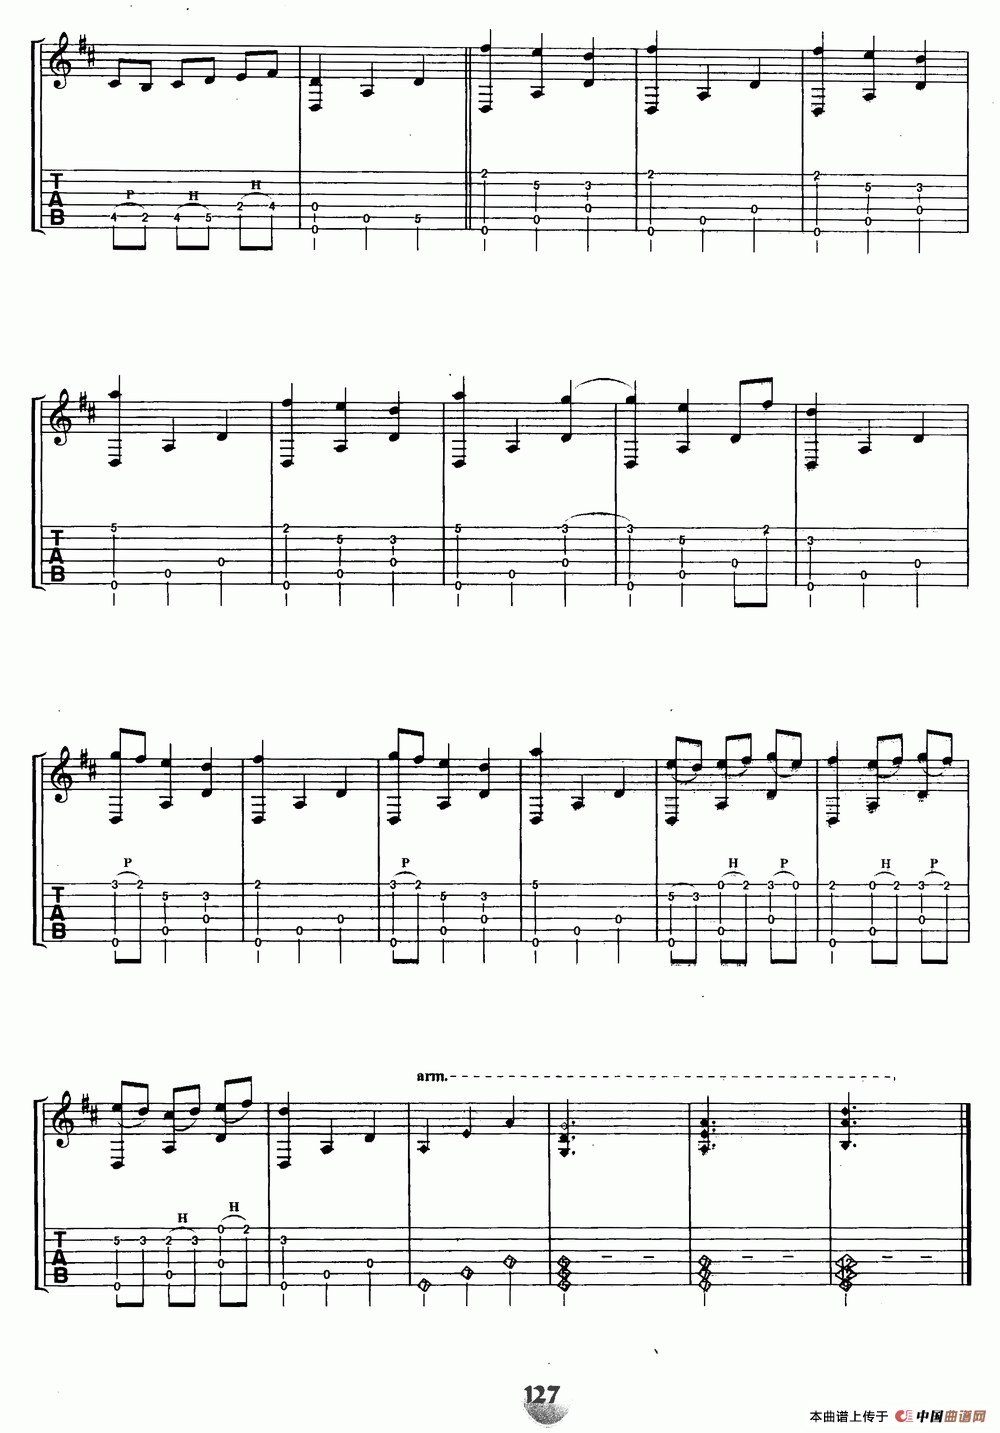 琉特琴组曲1号（Suite No.1 for Lute）